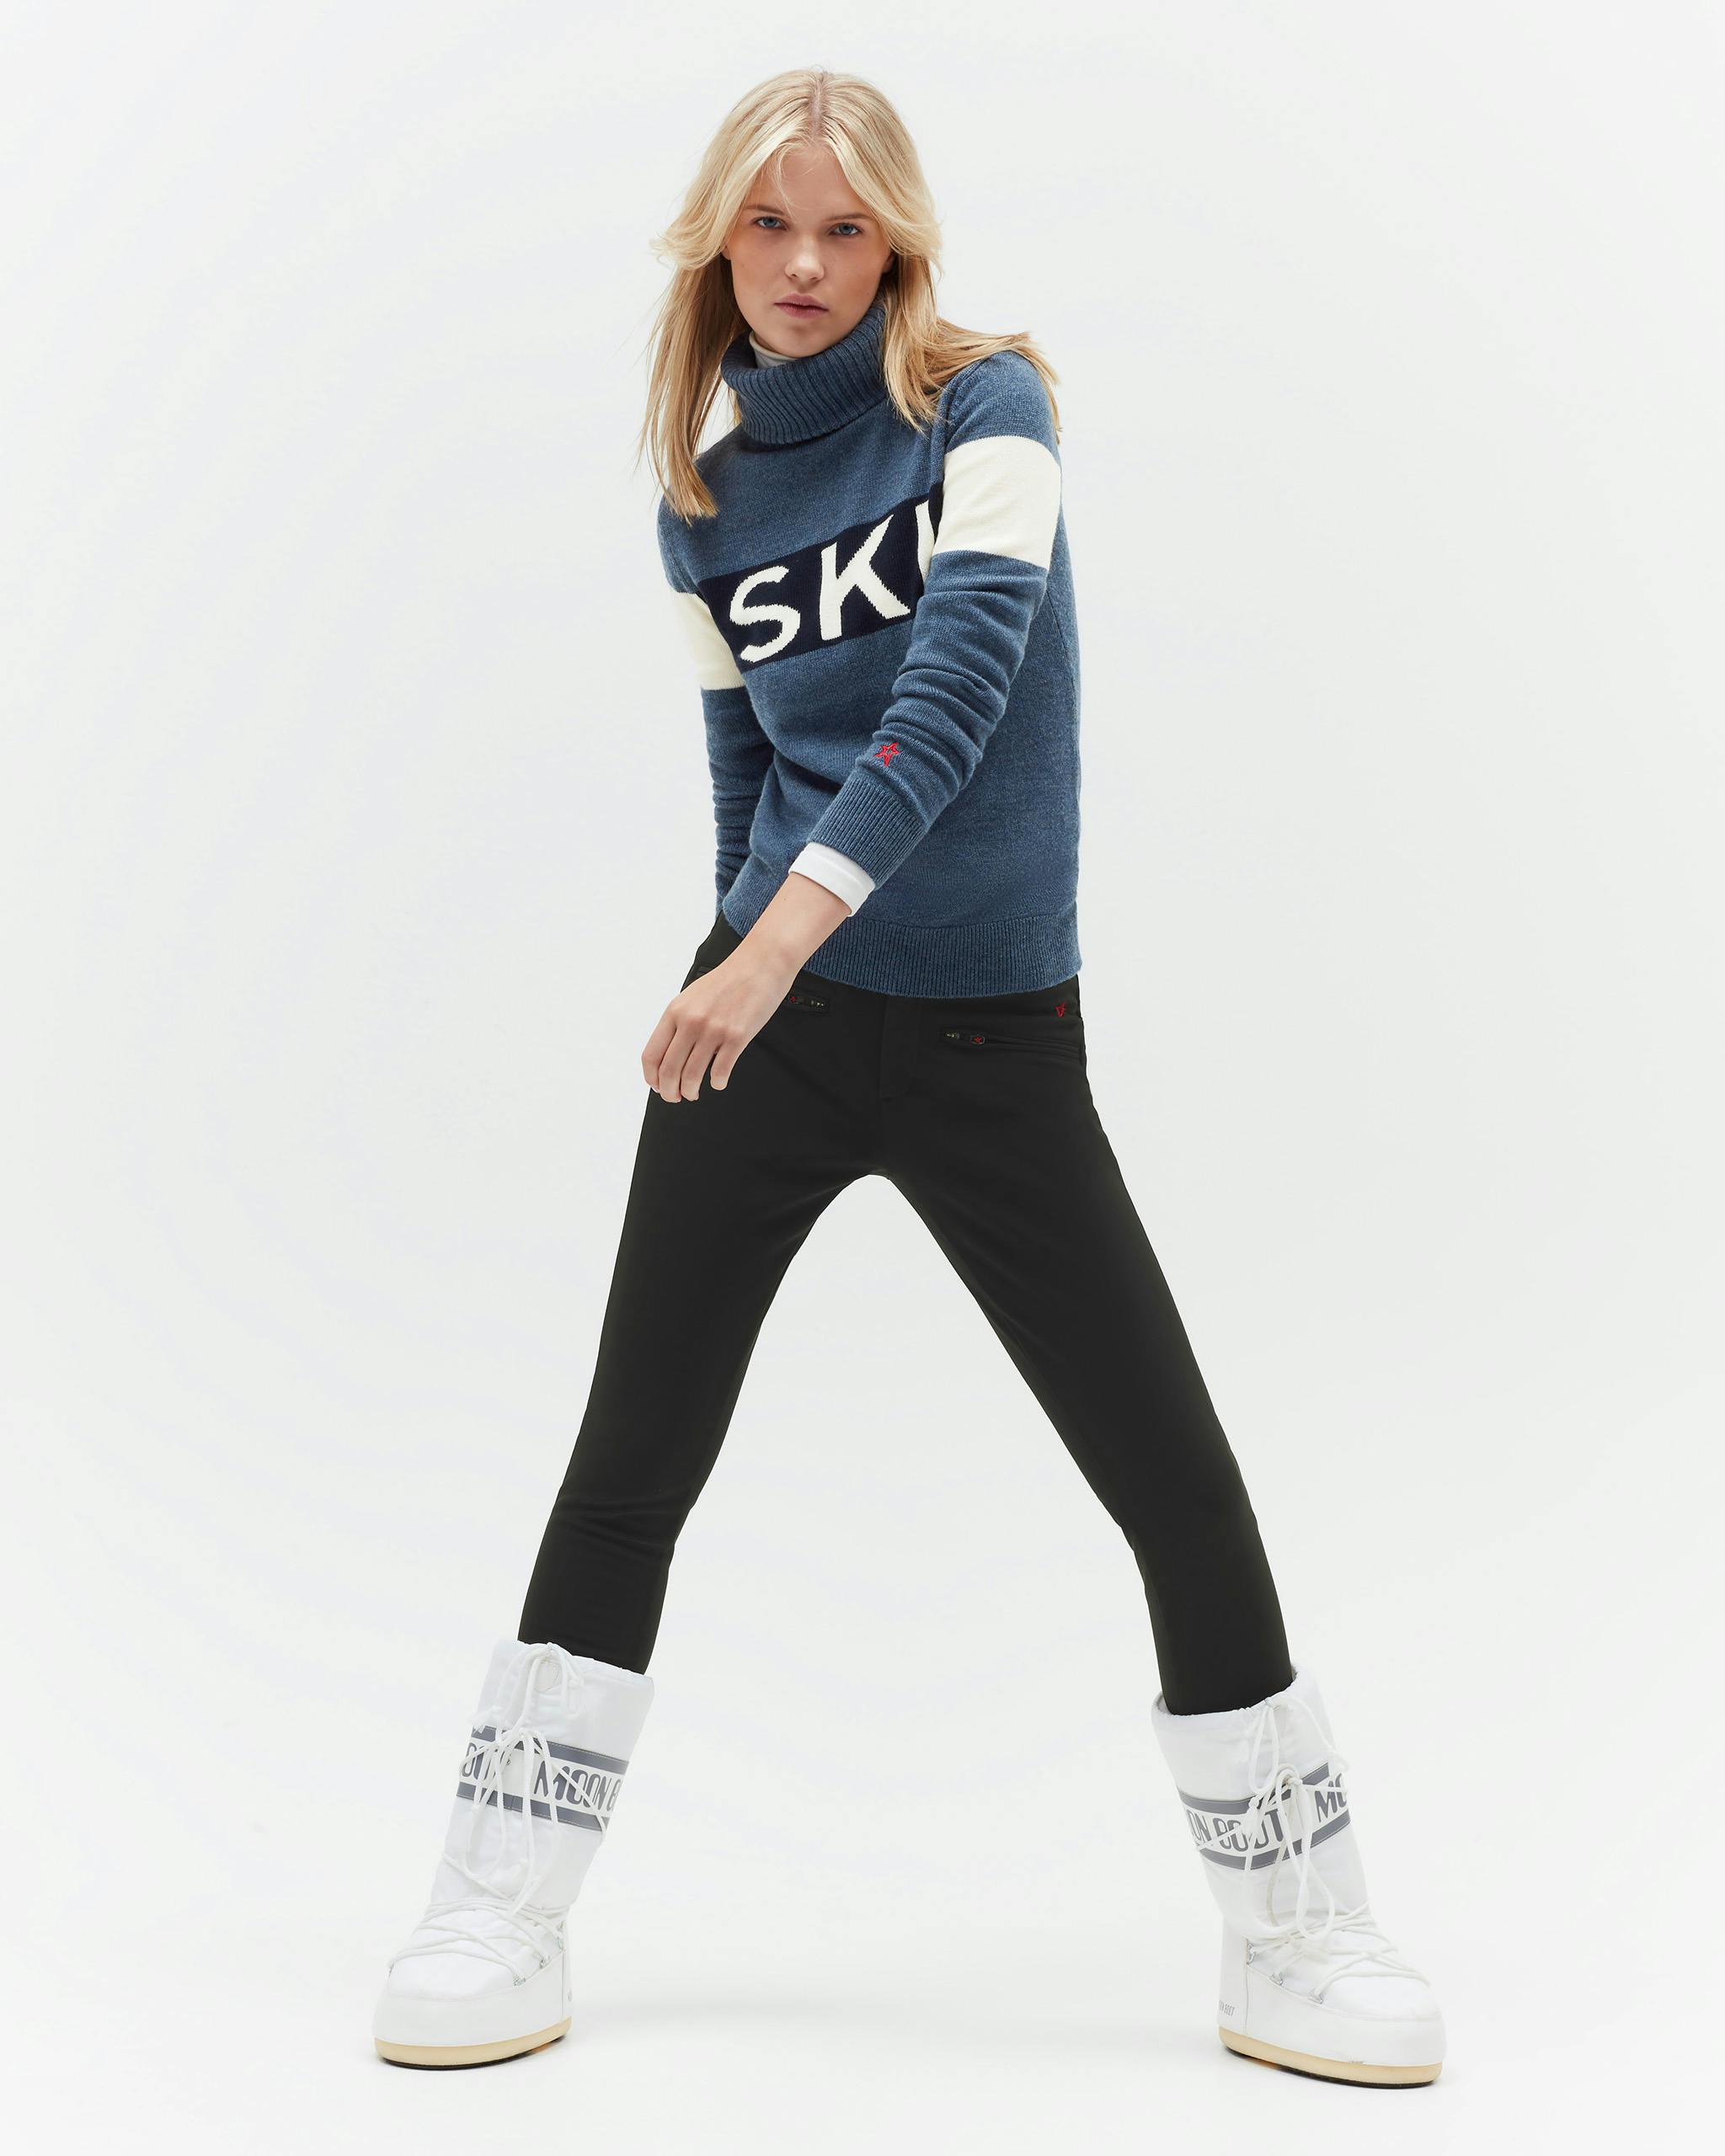 Ski II Merino Wool Sweater 0